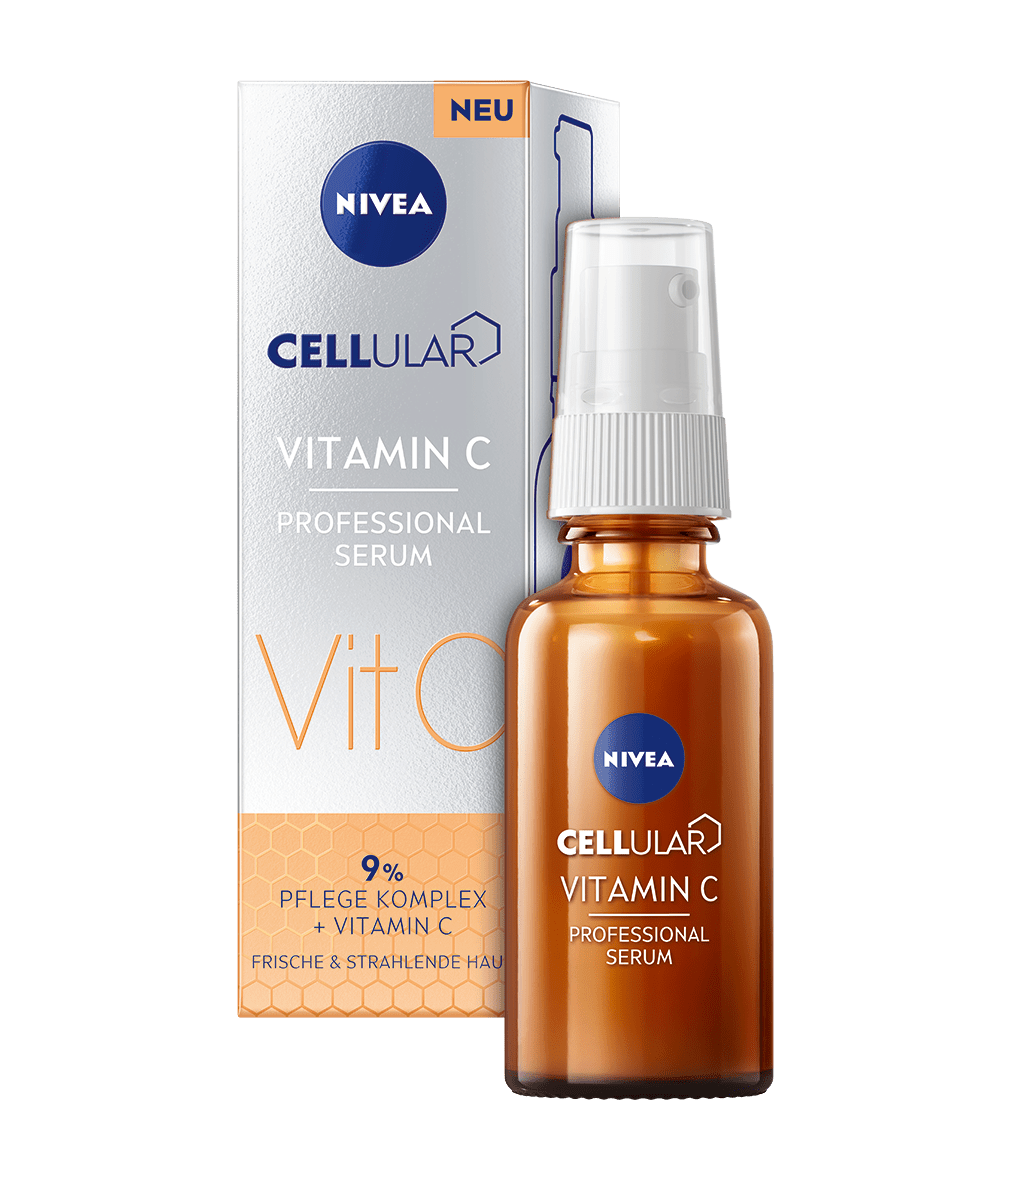 NIVEA Cellular Vitamin C Professional Serum